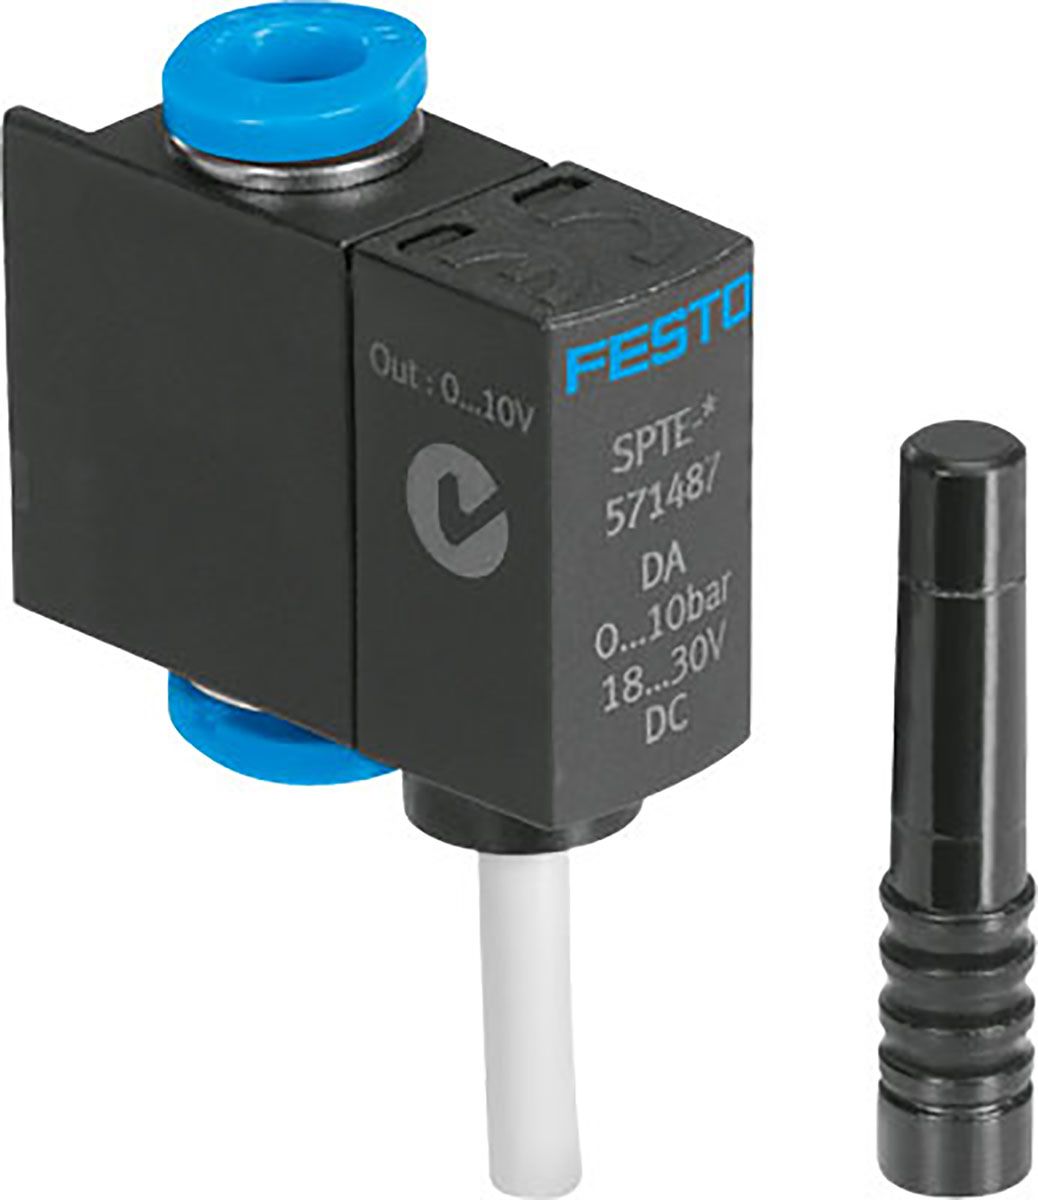 Festo SPTE, Steckmontage, 4 mm Relativdruck Druckschalter, 18 → 30V dc, 0bar → 10 bar